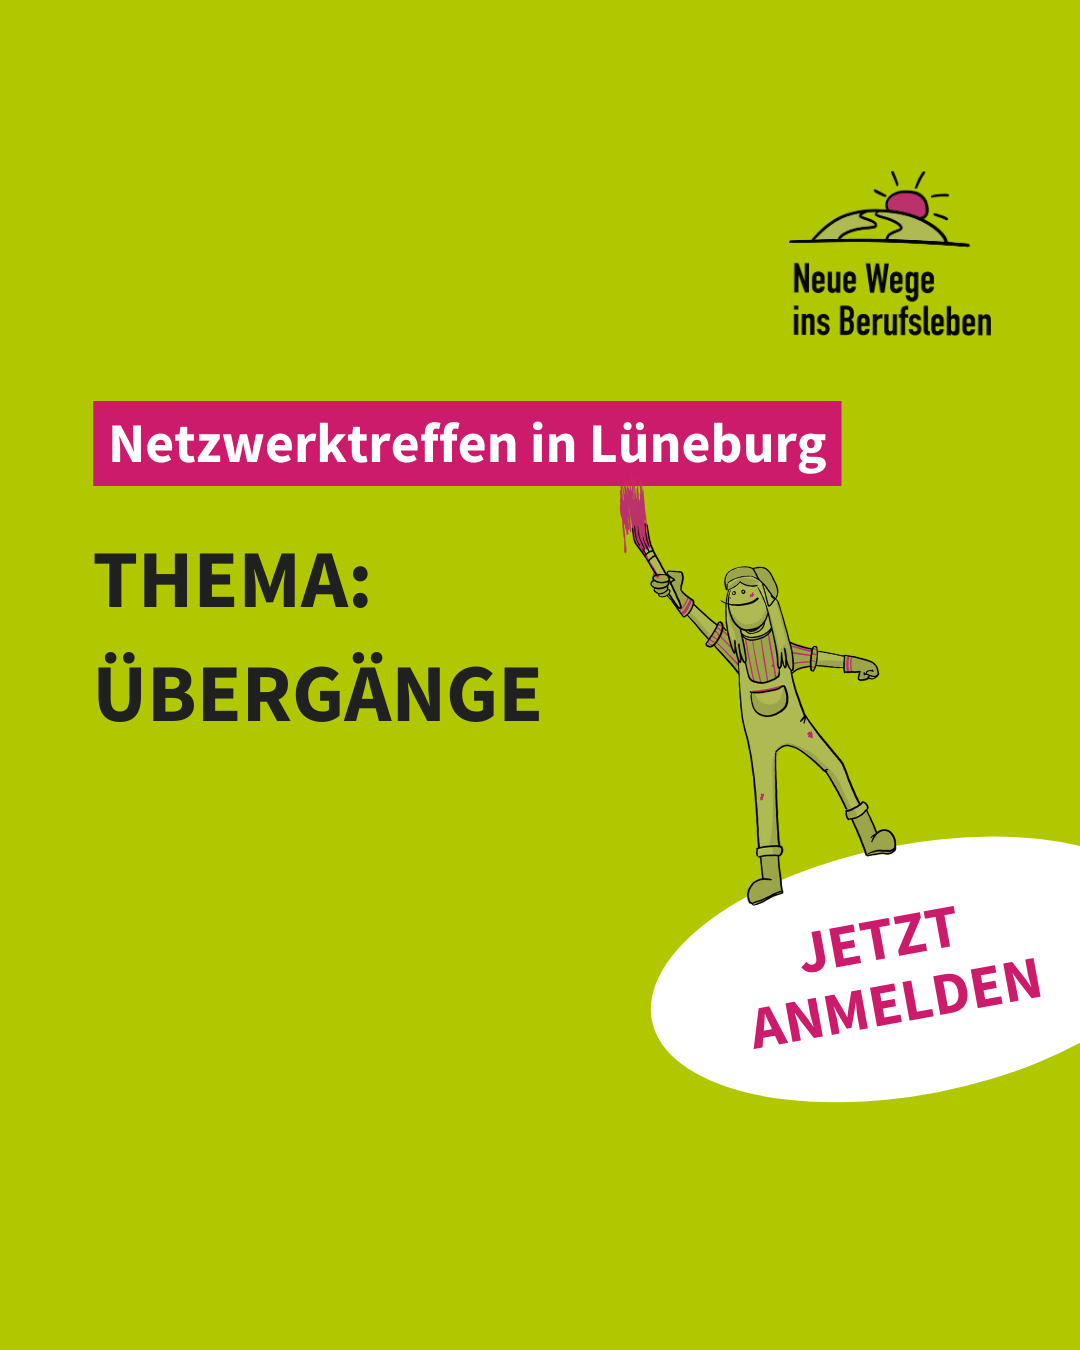 Netzwerktreffen: Inklusionsnetzwerk Lüneburg – Neue Wege ins Berufsleben